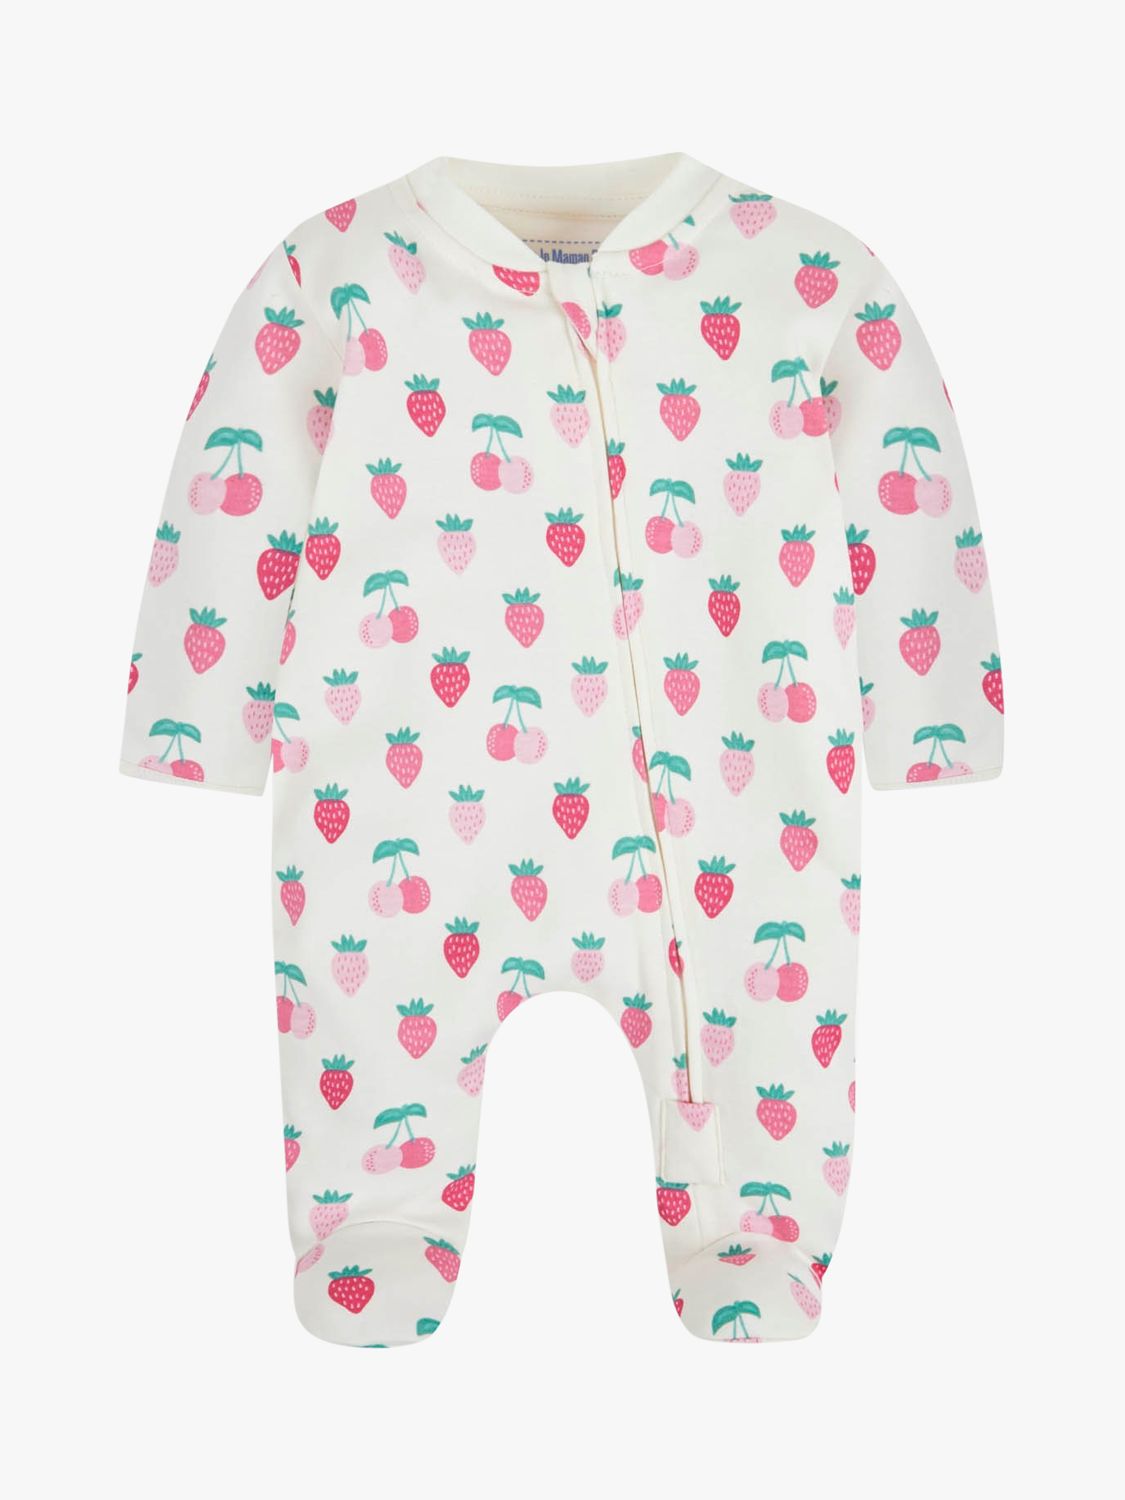 JoJo Maman Bébé Baby Fruit Zip Front Sleepsuit, Cream/Multi, 3-6 months